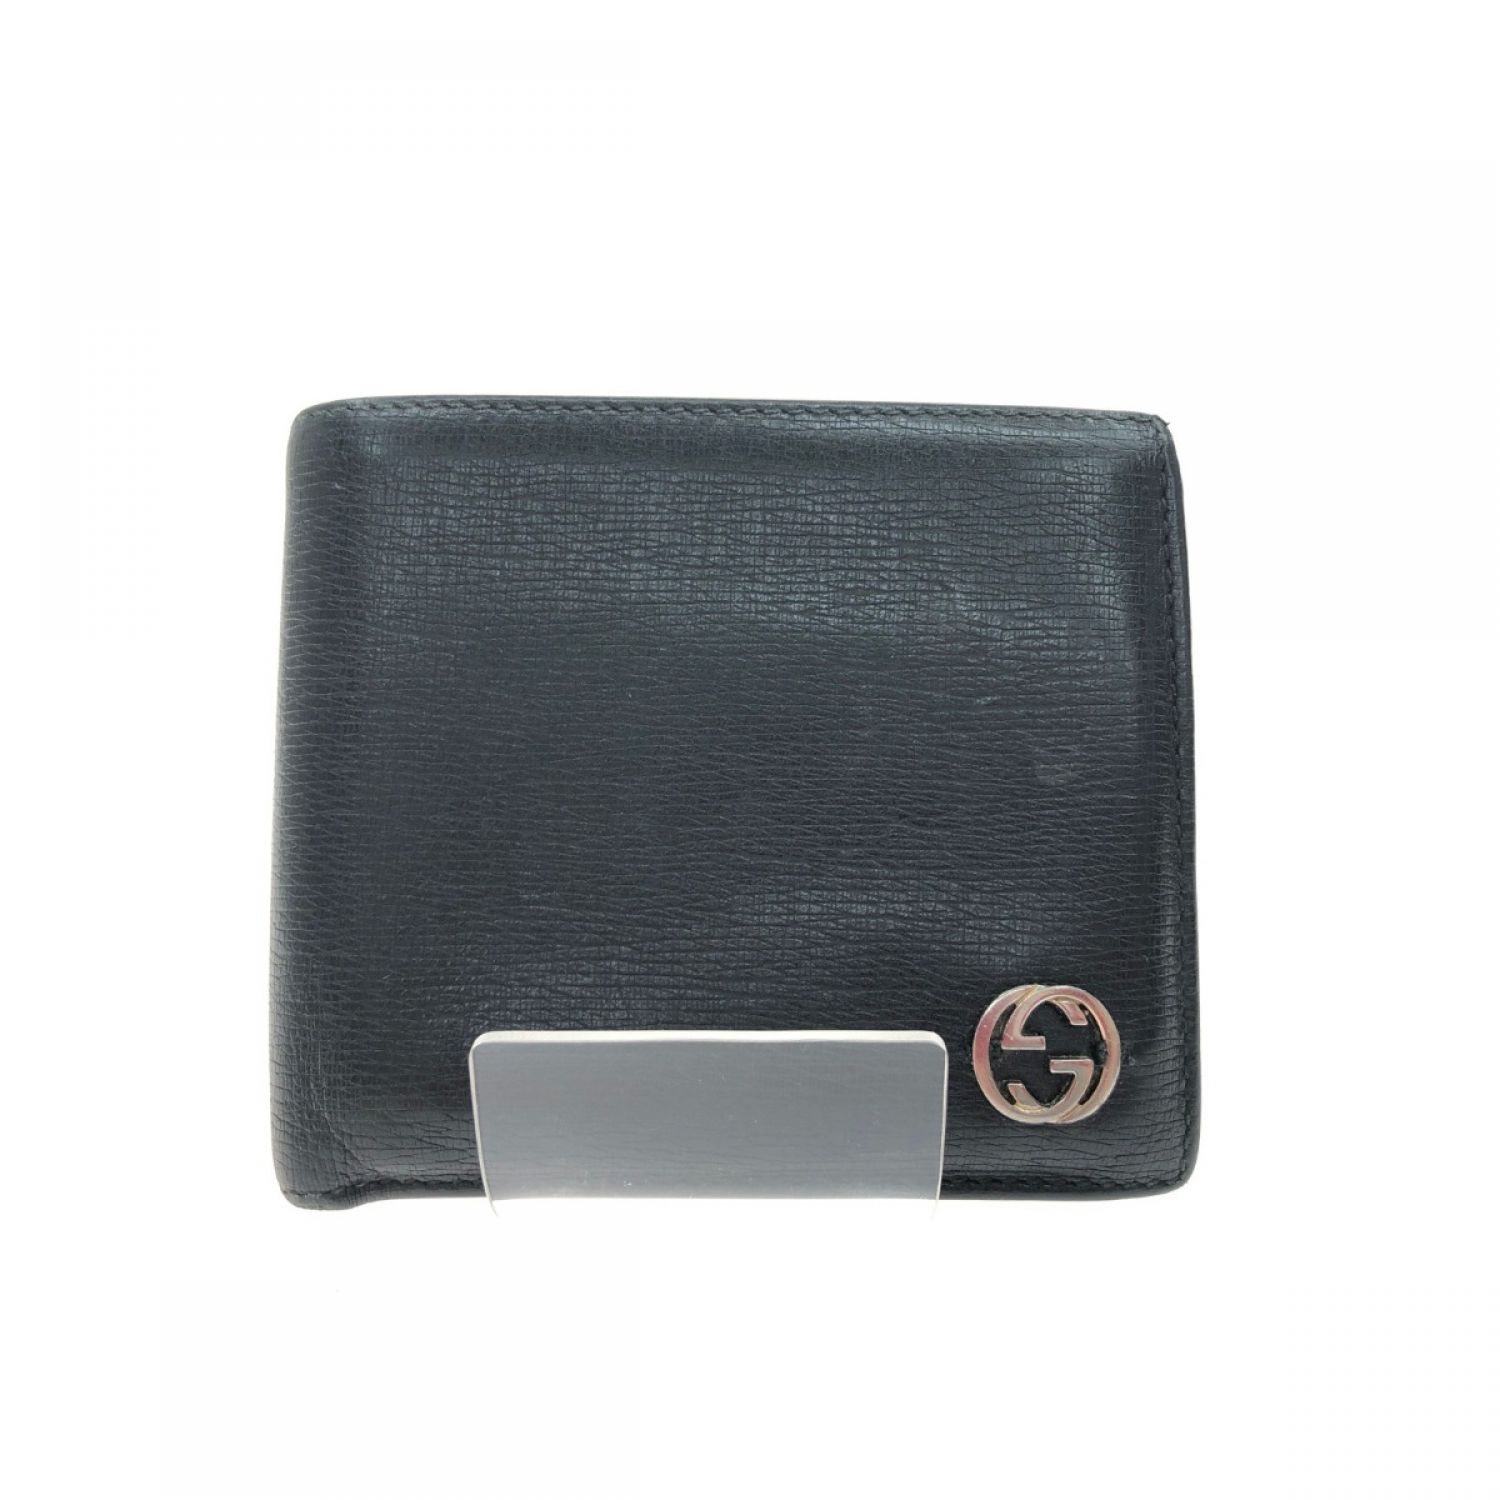 中古】 GUCCI グッチ メンズ 二つ折り財布 型押しカーフ インター